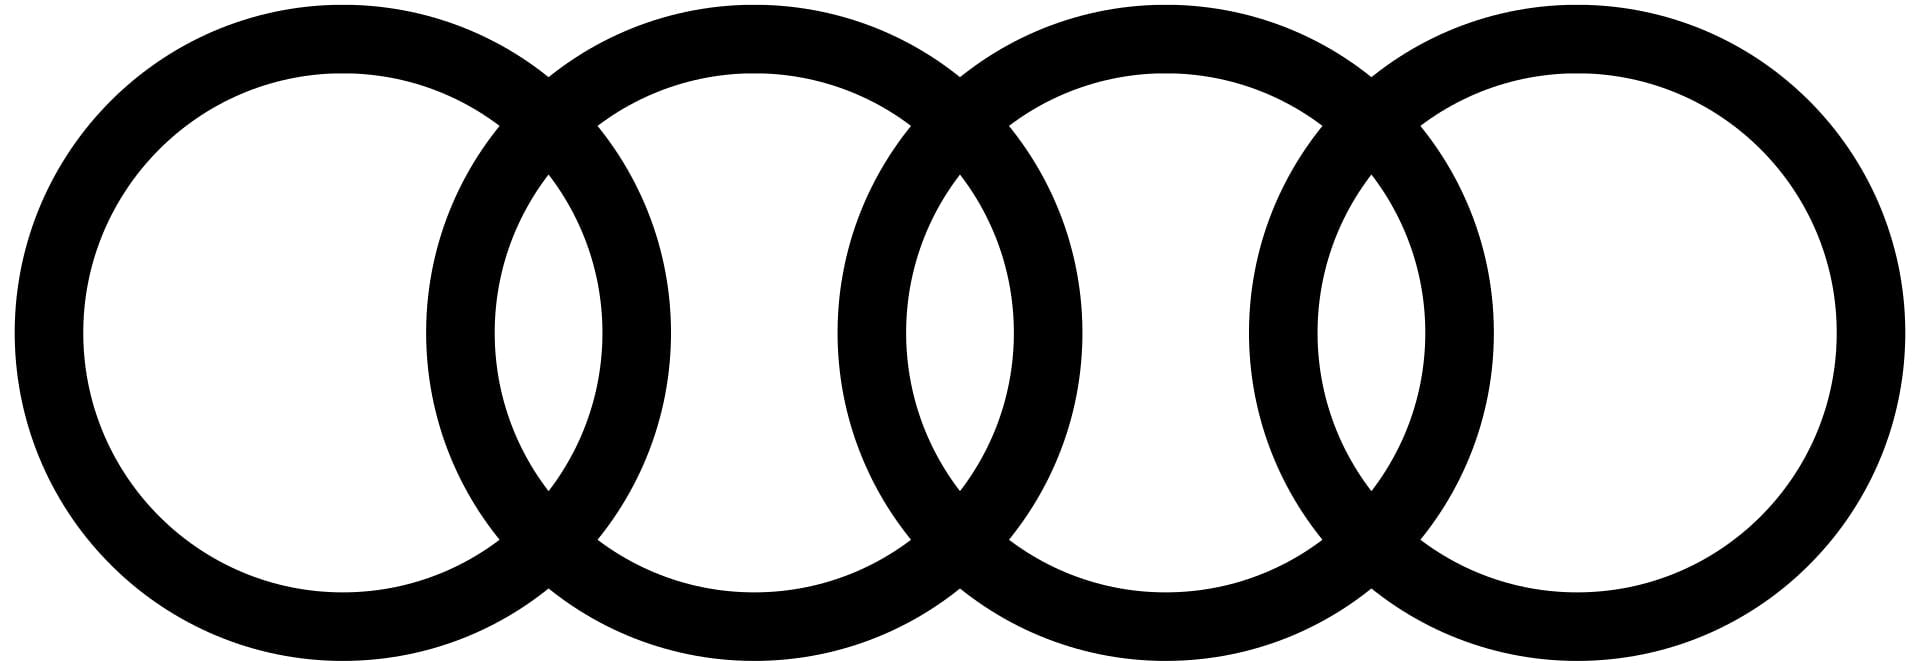  logo de la marque audi